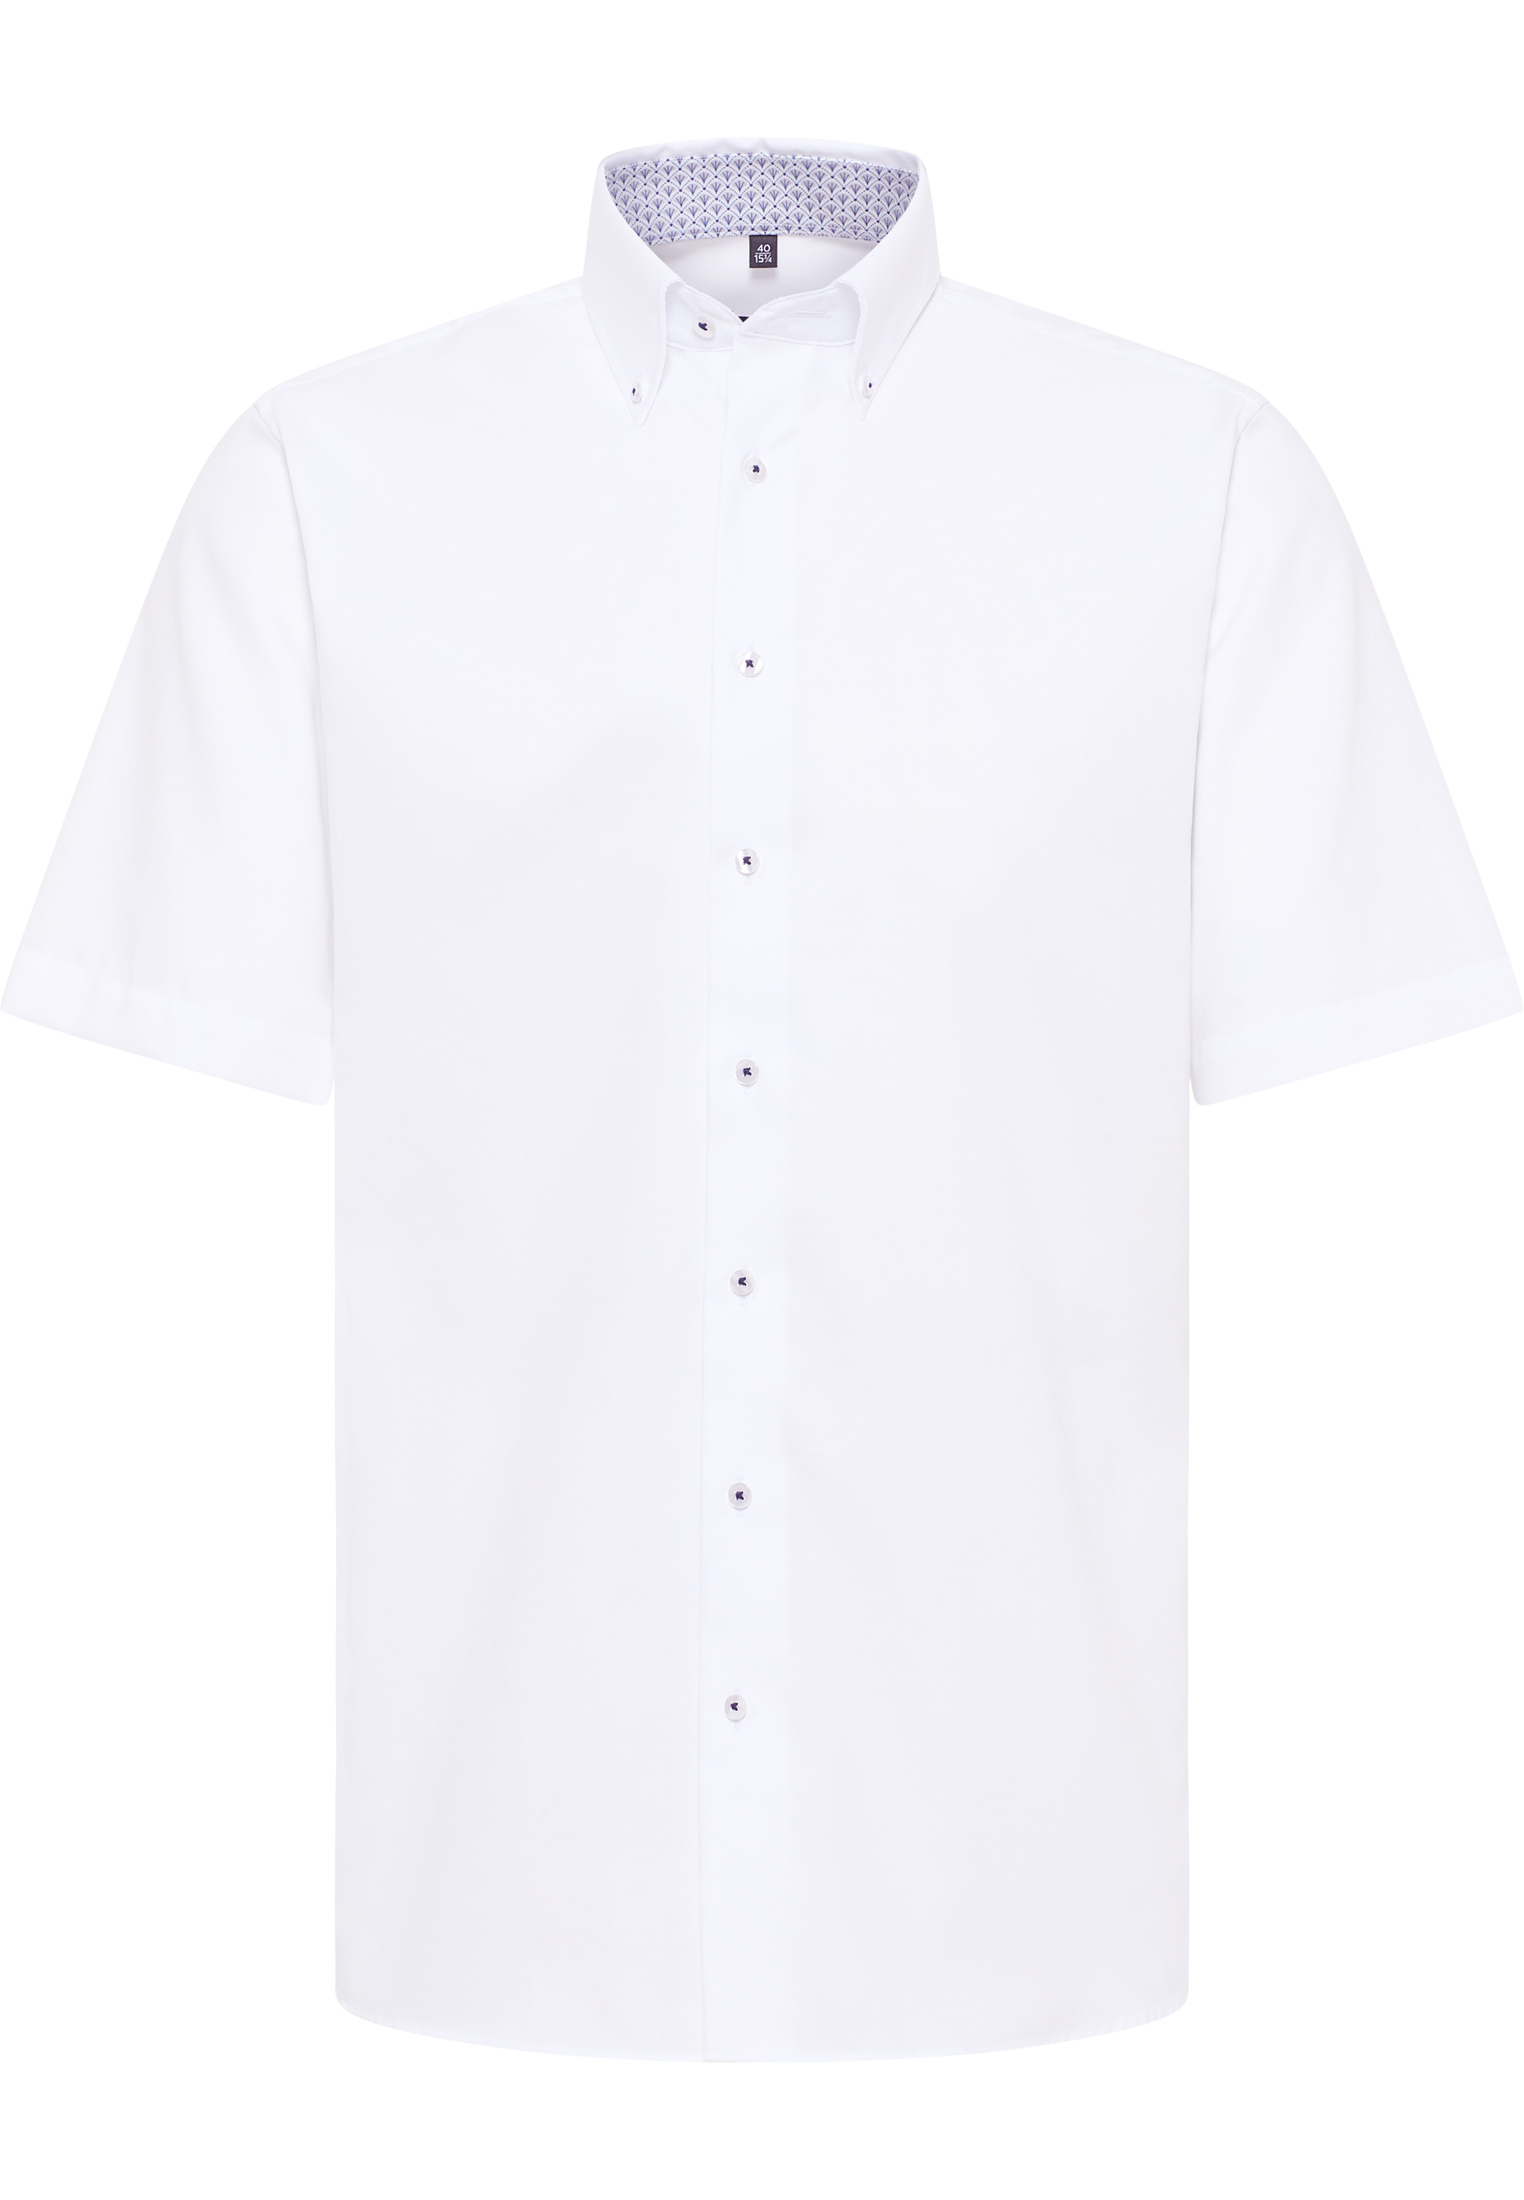 ETERNA plain Oxford short-sleeved shirt MODERN FIT